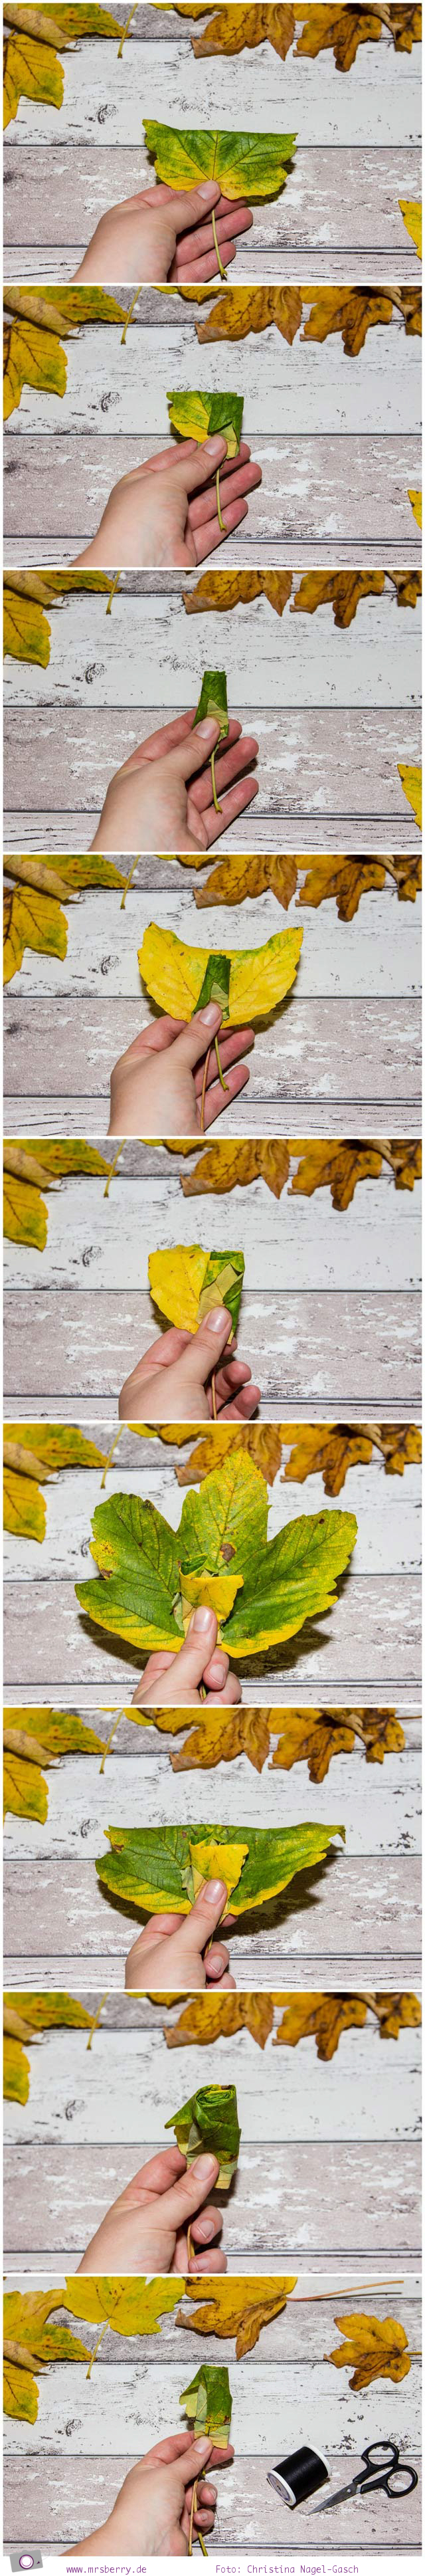 Herbst DIY - Blumenstrauß aus Blättern basteln